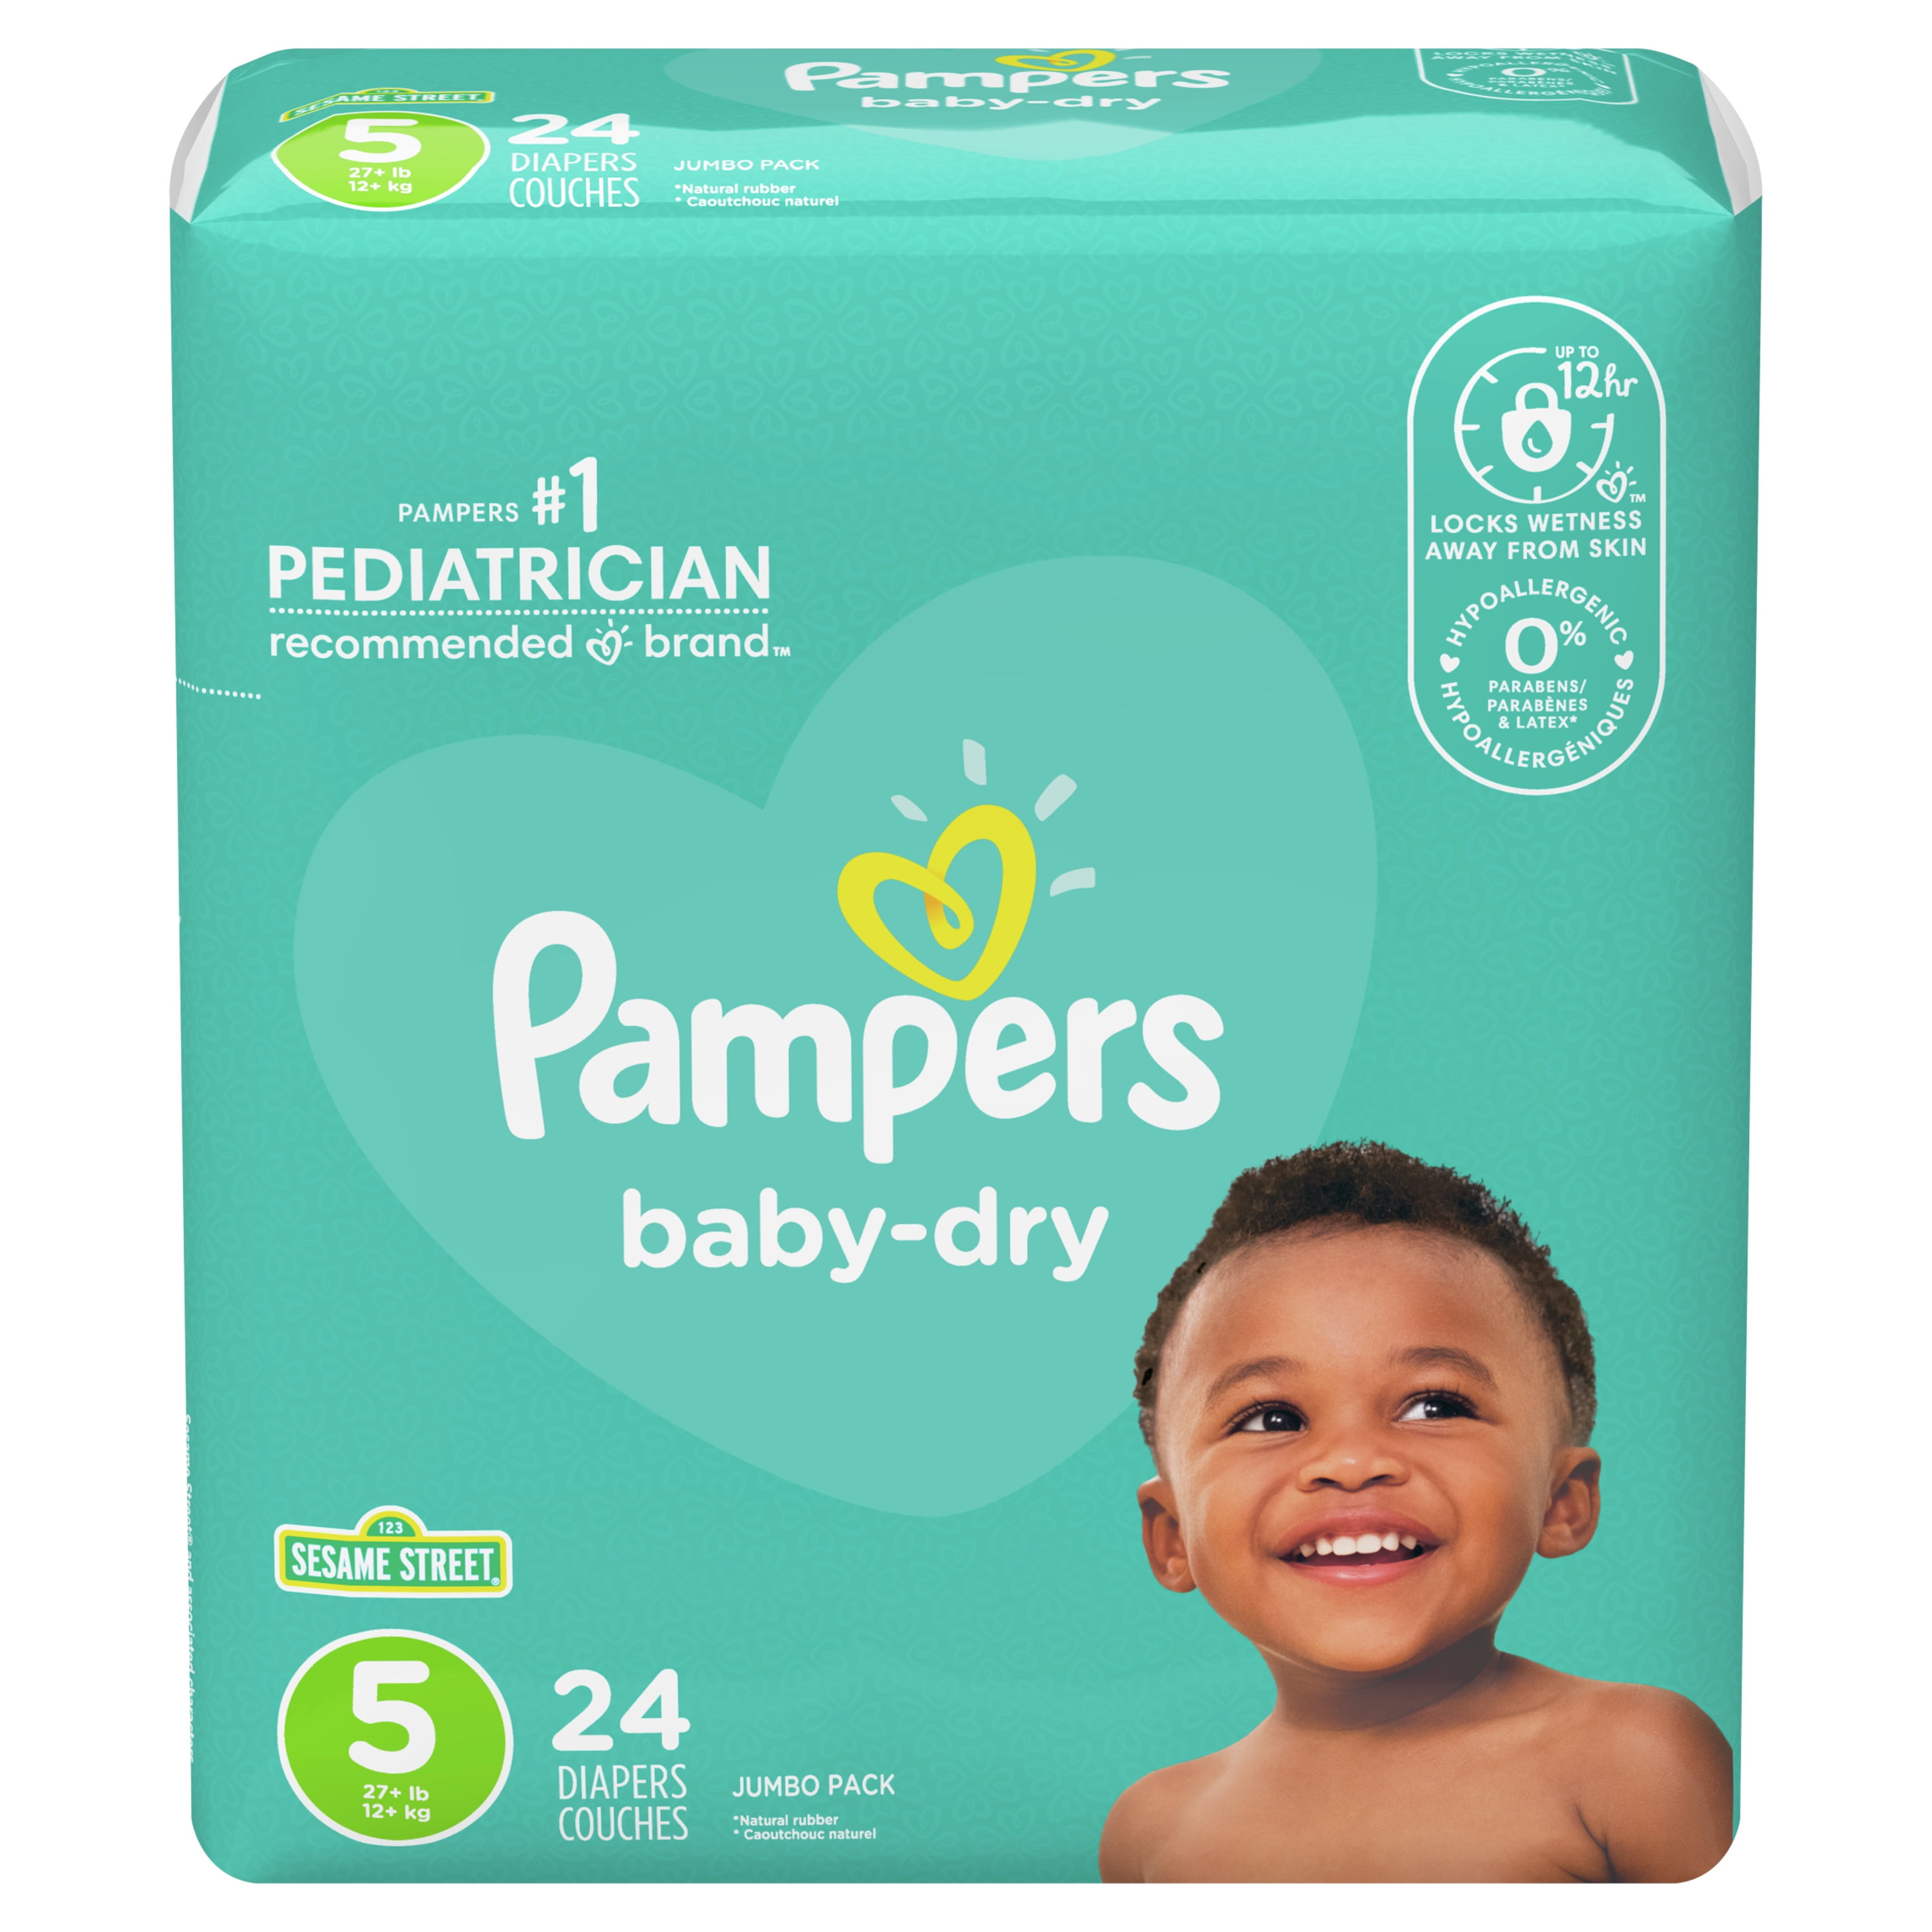 bevestig alstublieft Ziekte Dageraad Pampers Baby-Dry Extra Protection Diapers, Size 5, 24 Count - Walmart.com